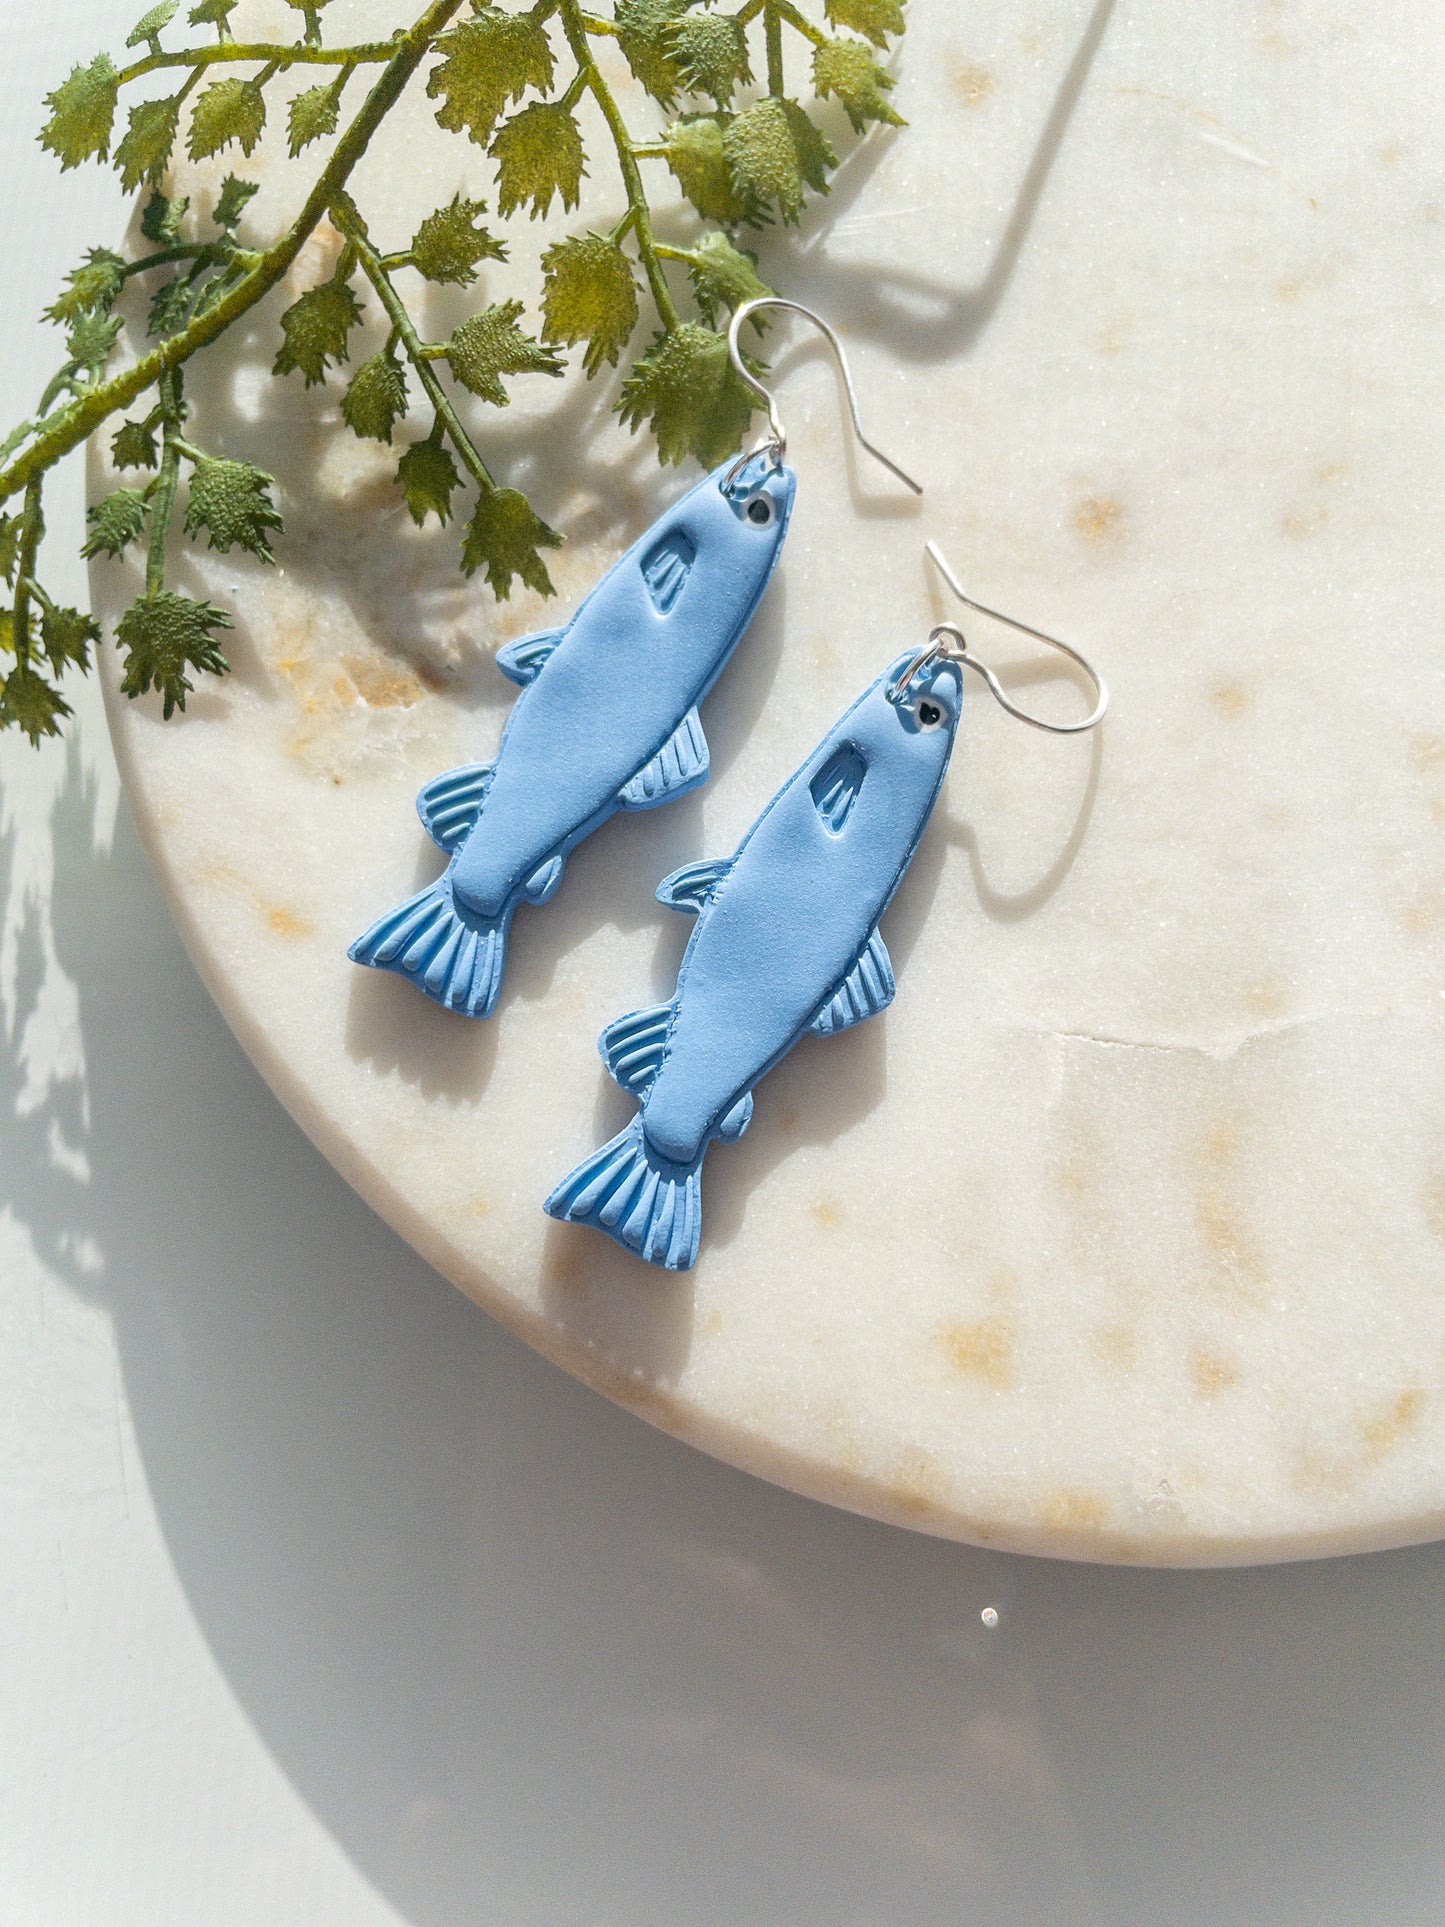 clay earrings | Trout fish earrings